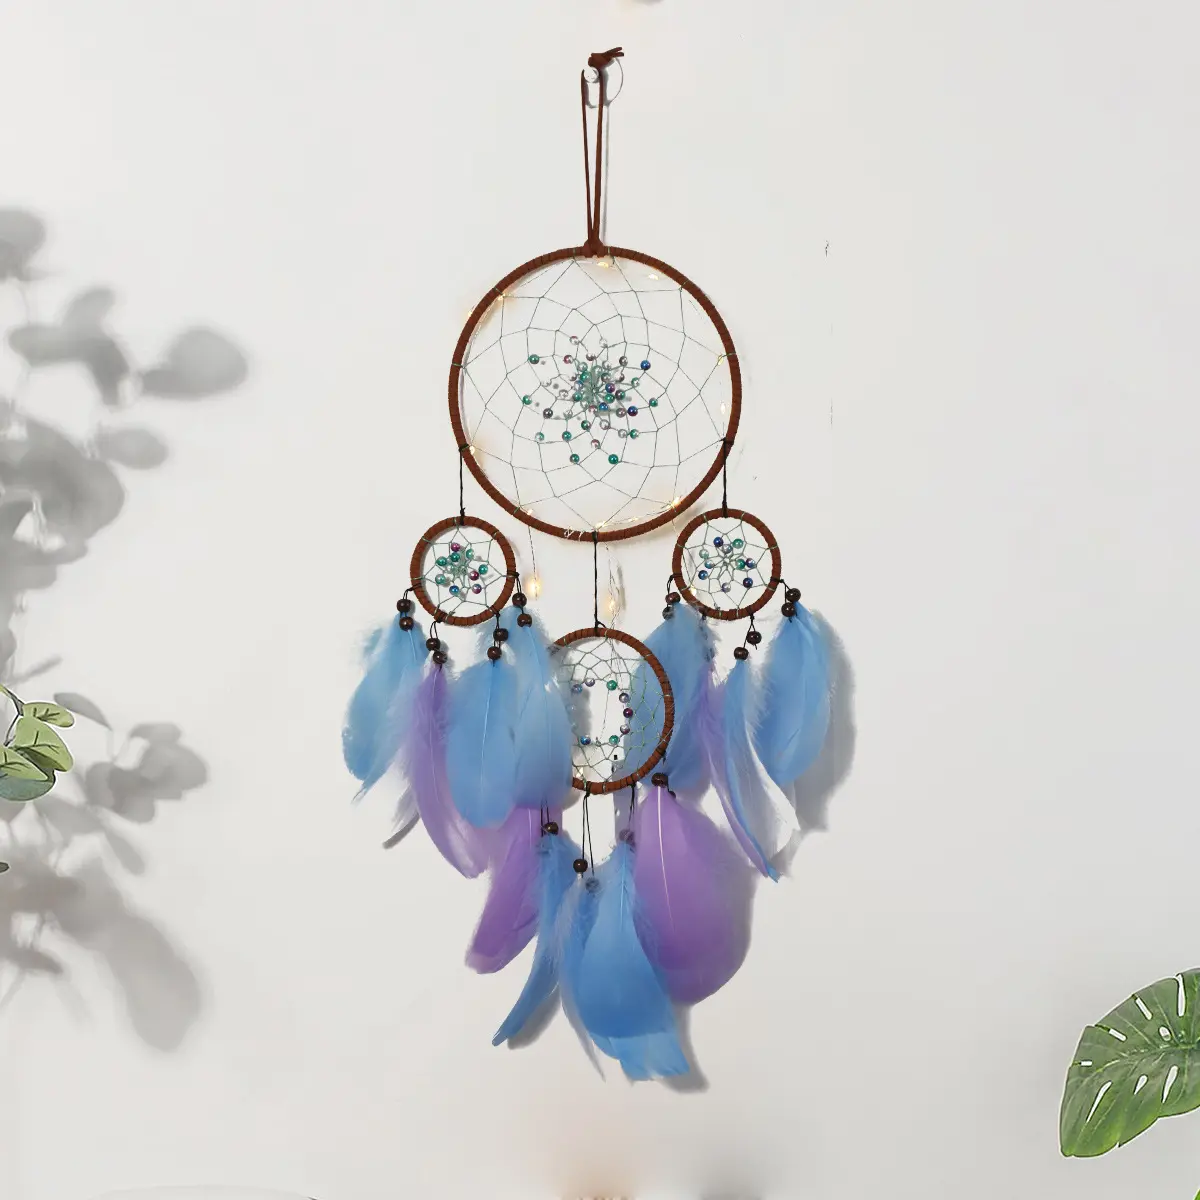 Kingcome Style indien quatre anneaux attrape-rêves carillons éoliens maison bureau tenture murale décoration